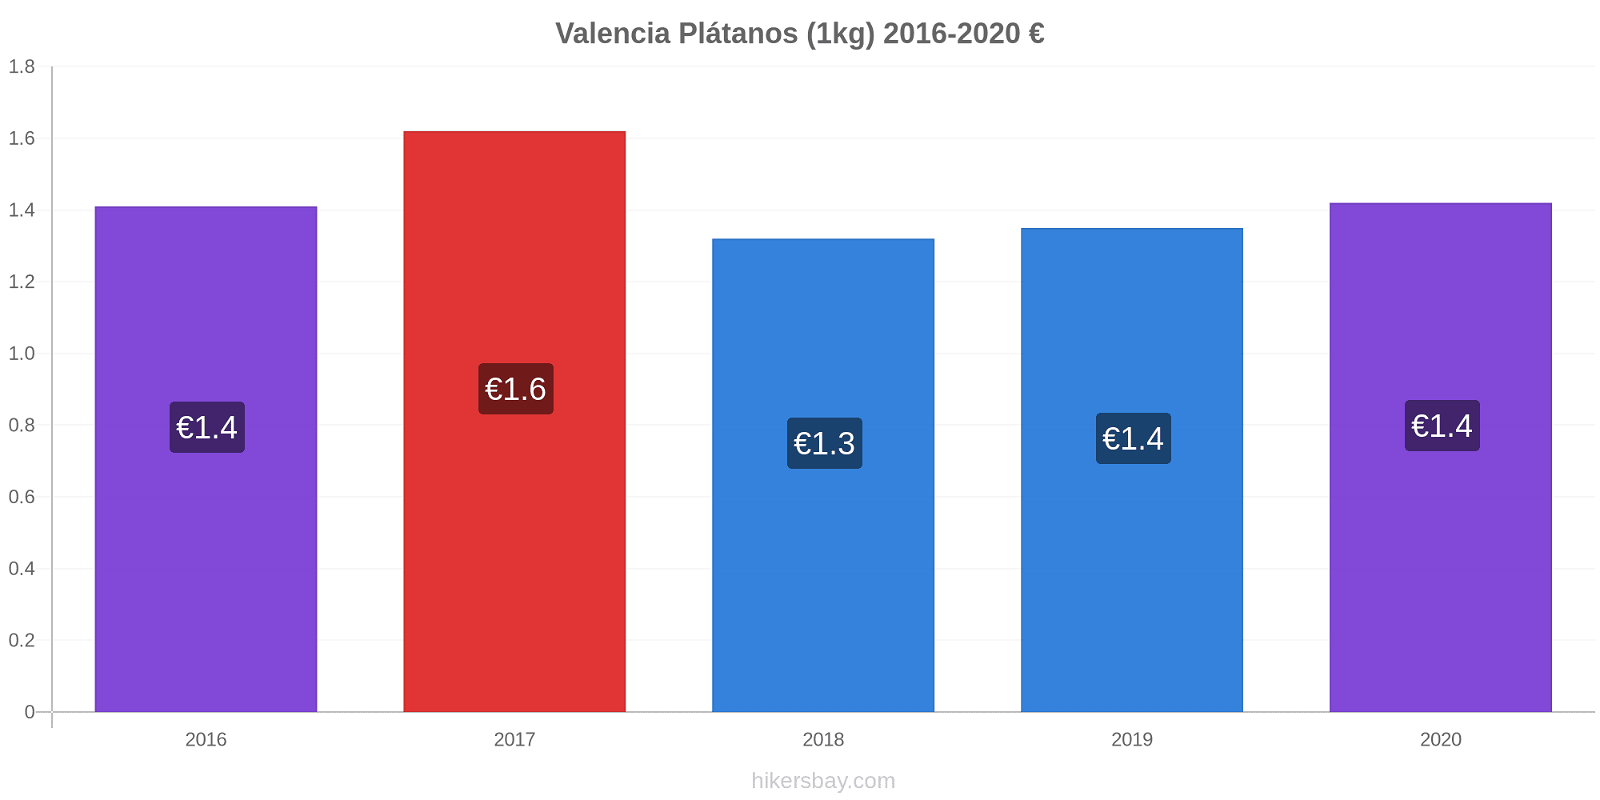 Valencia cambios de precios Plátano (1kg) hikersbay.com